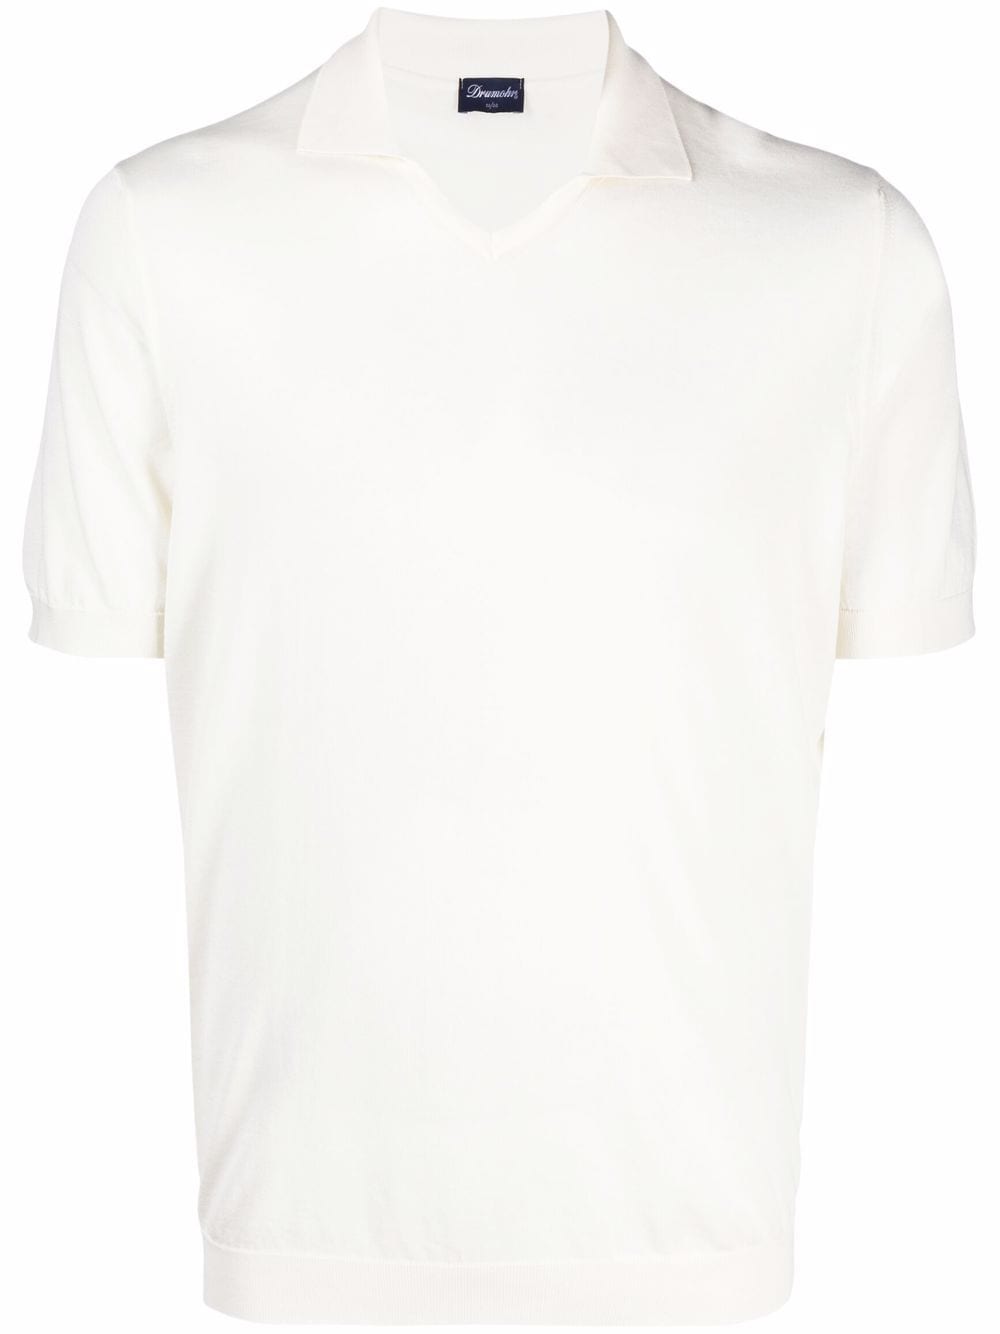 Drumohr T-Shirt mit offenem Poloshirtkragen - Nude von Drumohr